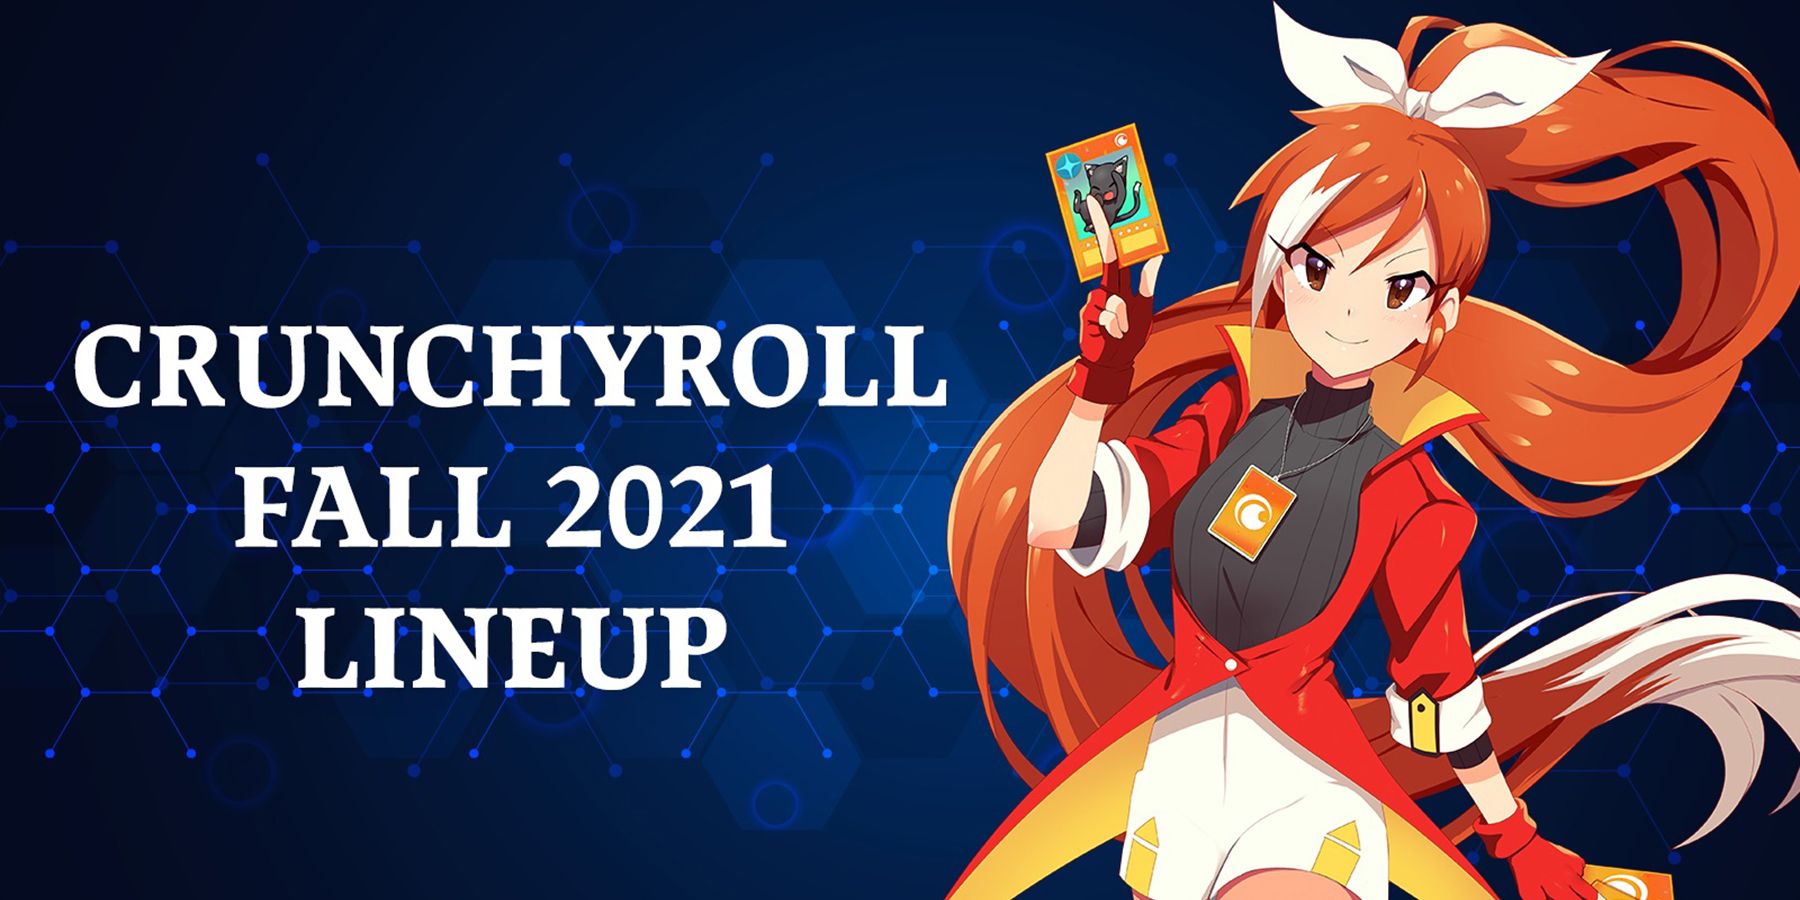 Crunchyroll חושף מערך סתיו 2021 מרגש, כולל קוטל השדים